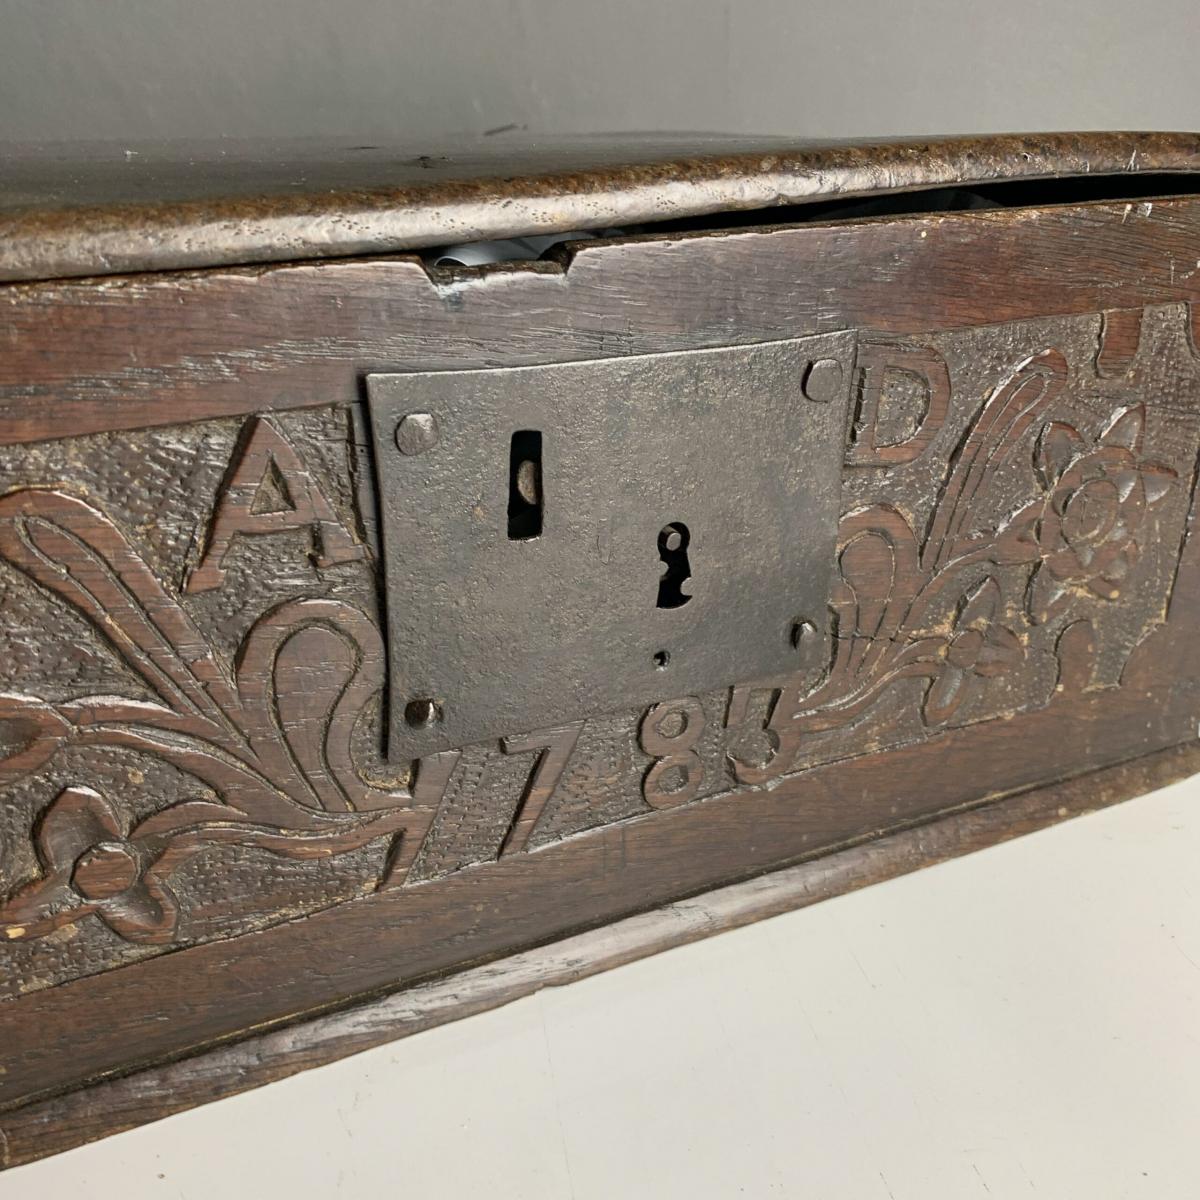 18th century oak bible box